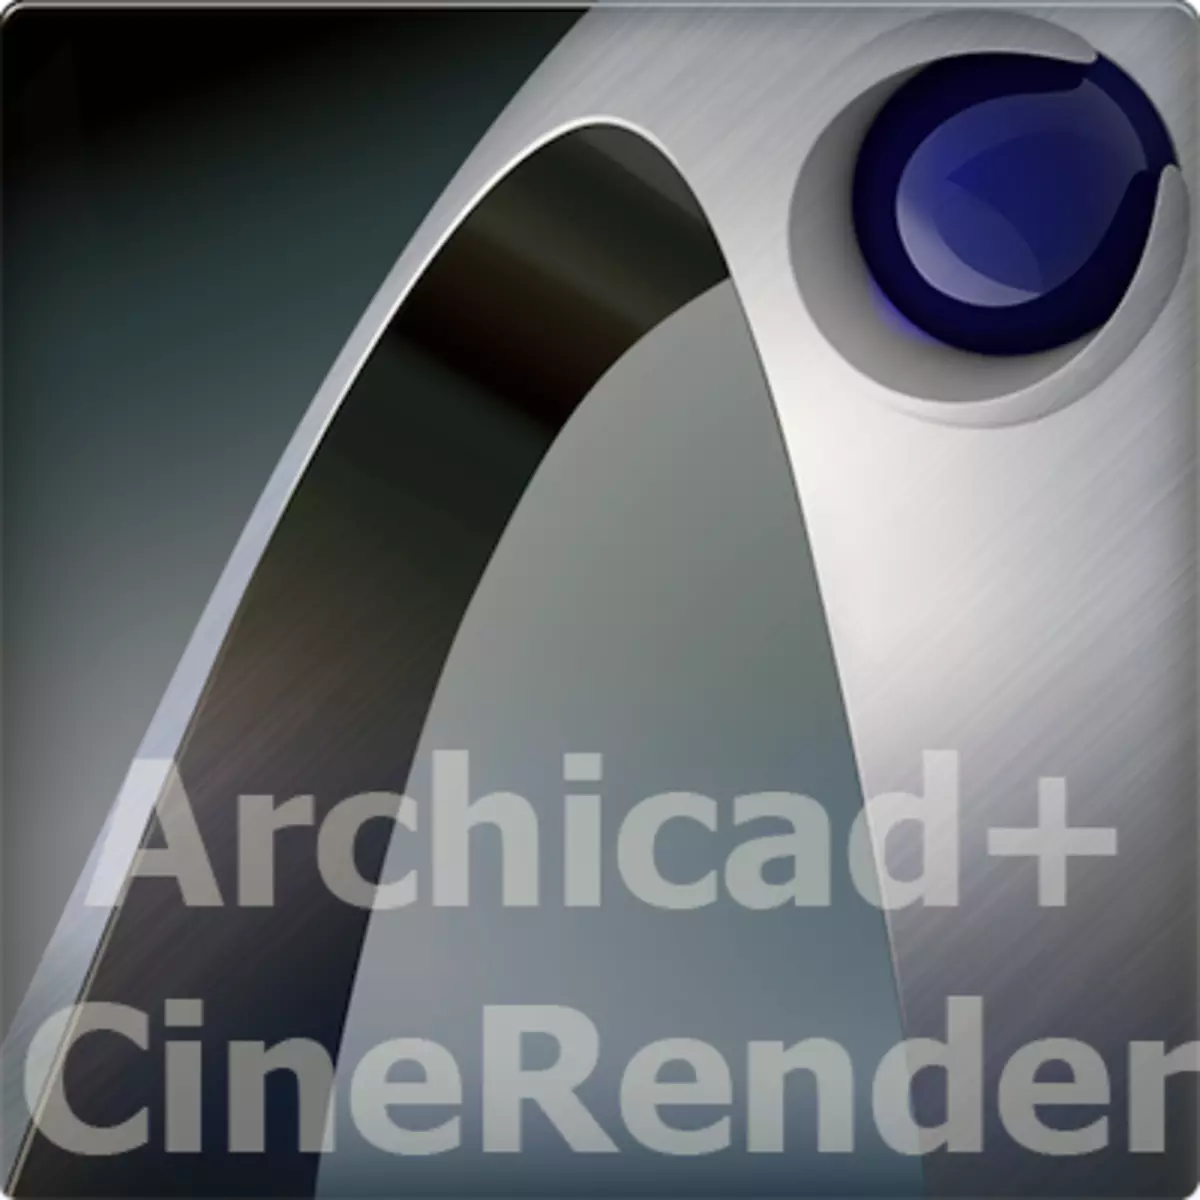 Archicad-logo-viz